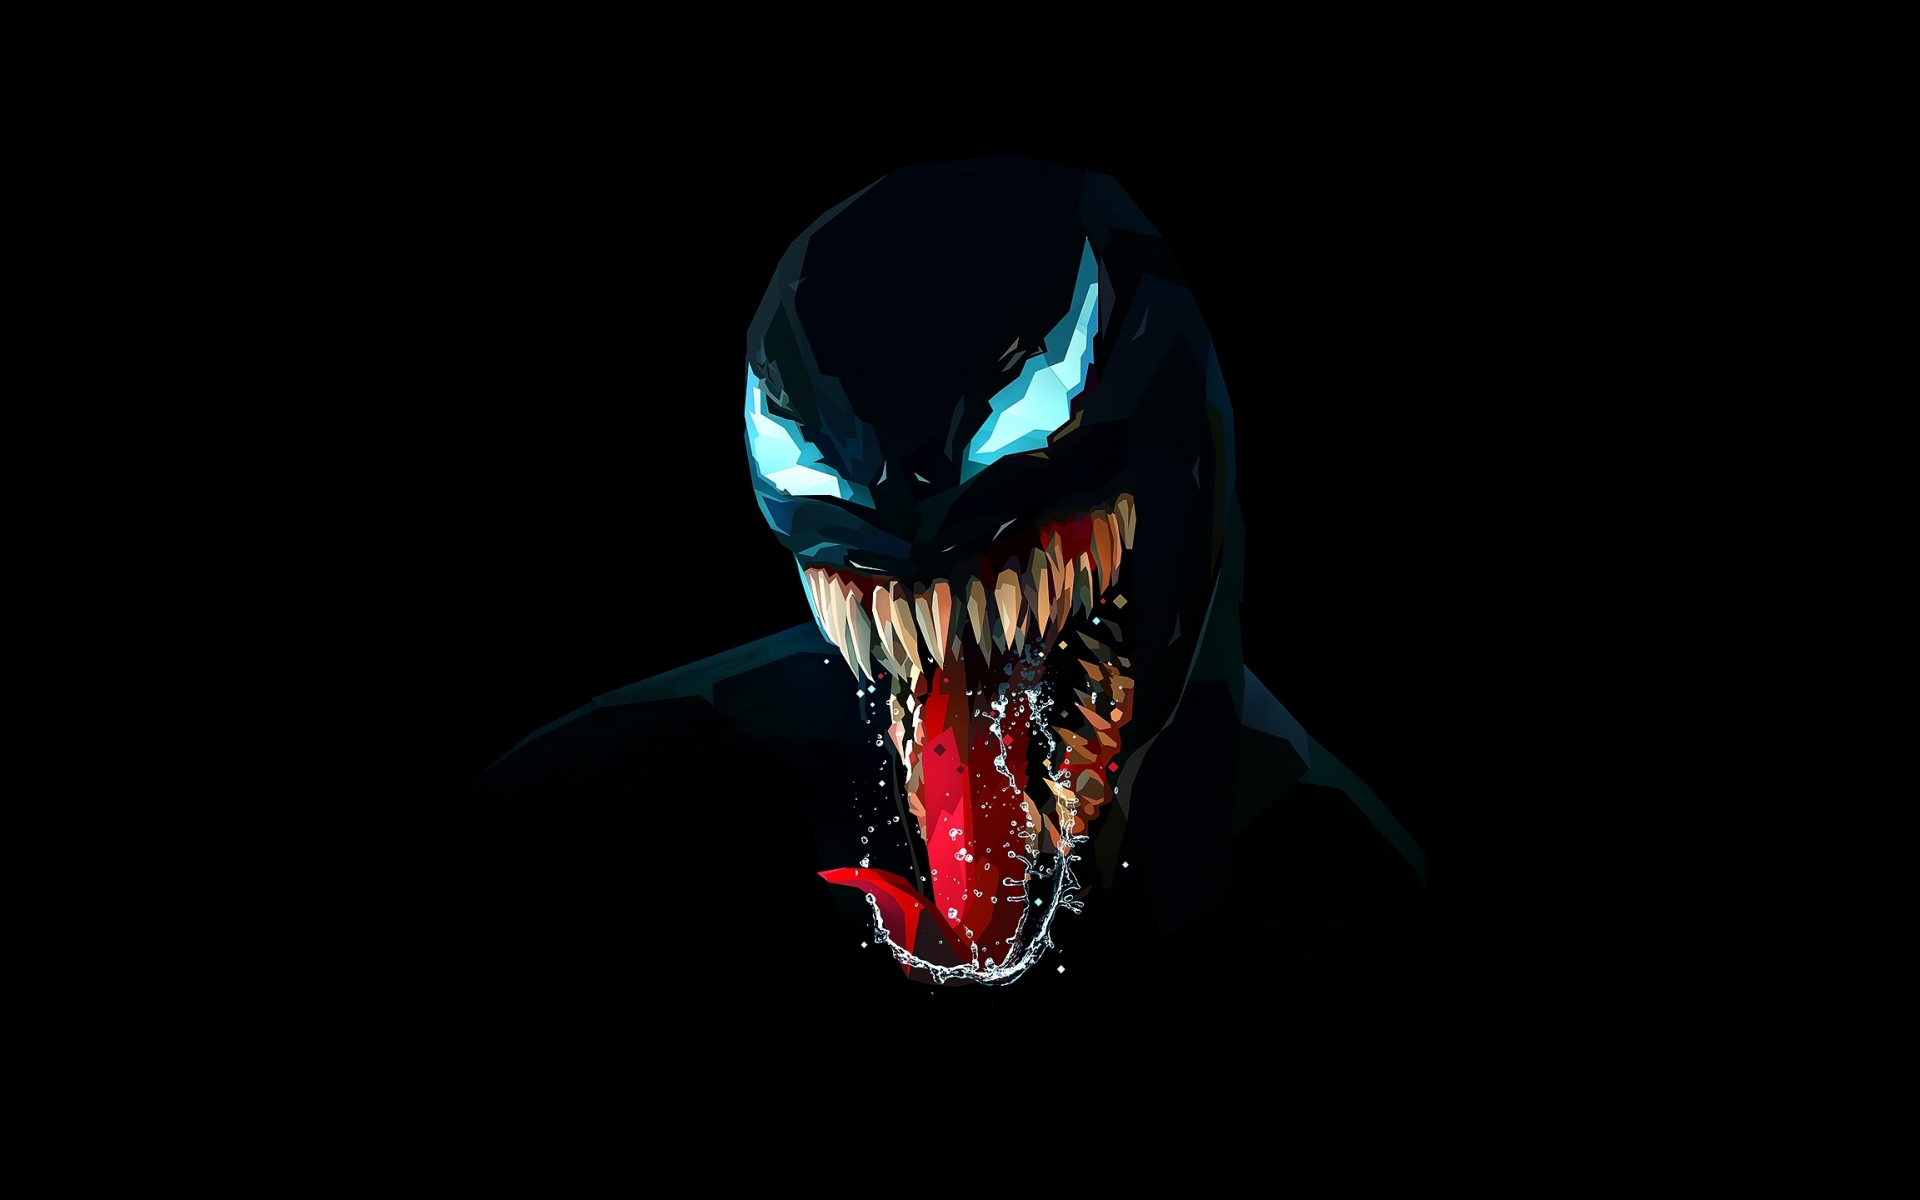 Marvel Venom Minimal Wallpapers